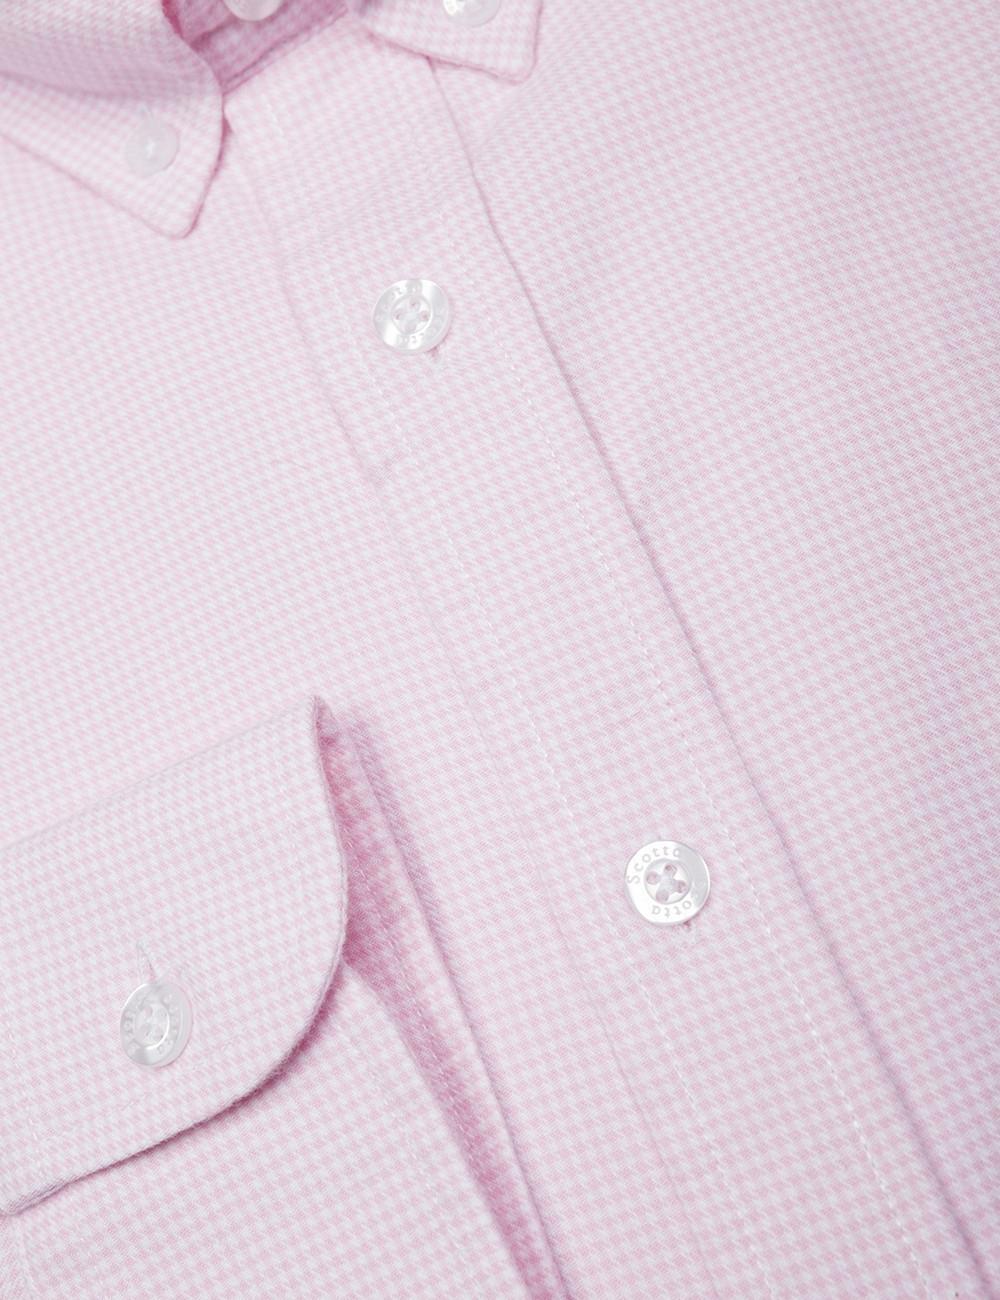 Camisa scotta regular fit rosa hombre -X